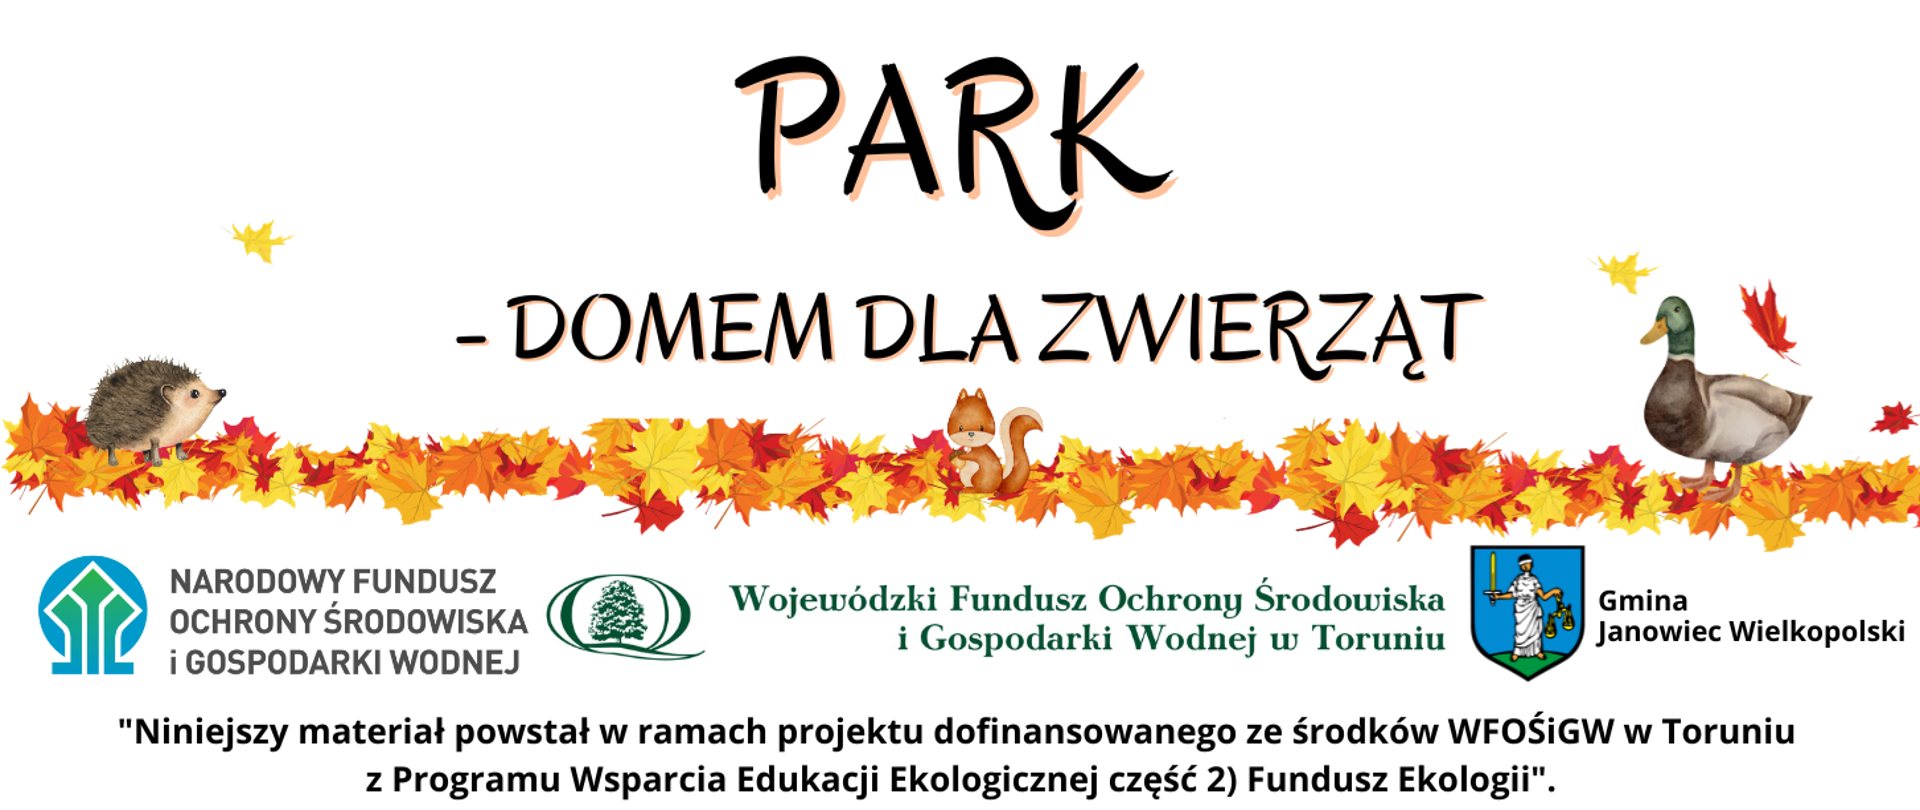 Wyposażamy park miejski w Janowcu Wielkopolskim w schronienia i pożywienie dla zwierząt.